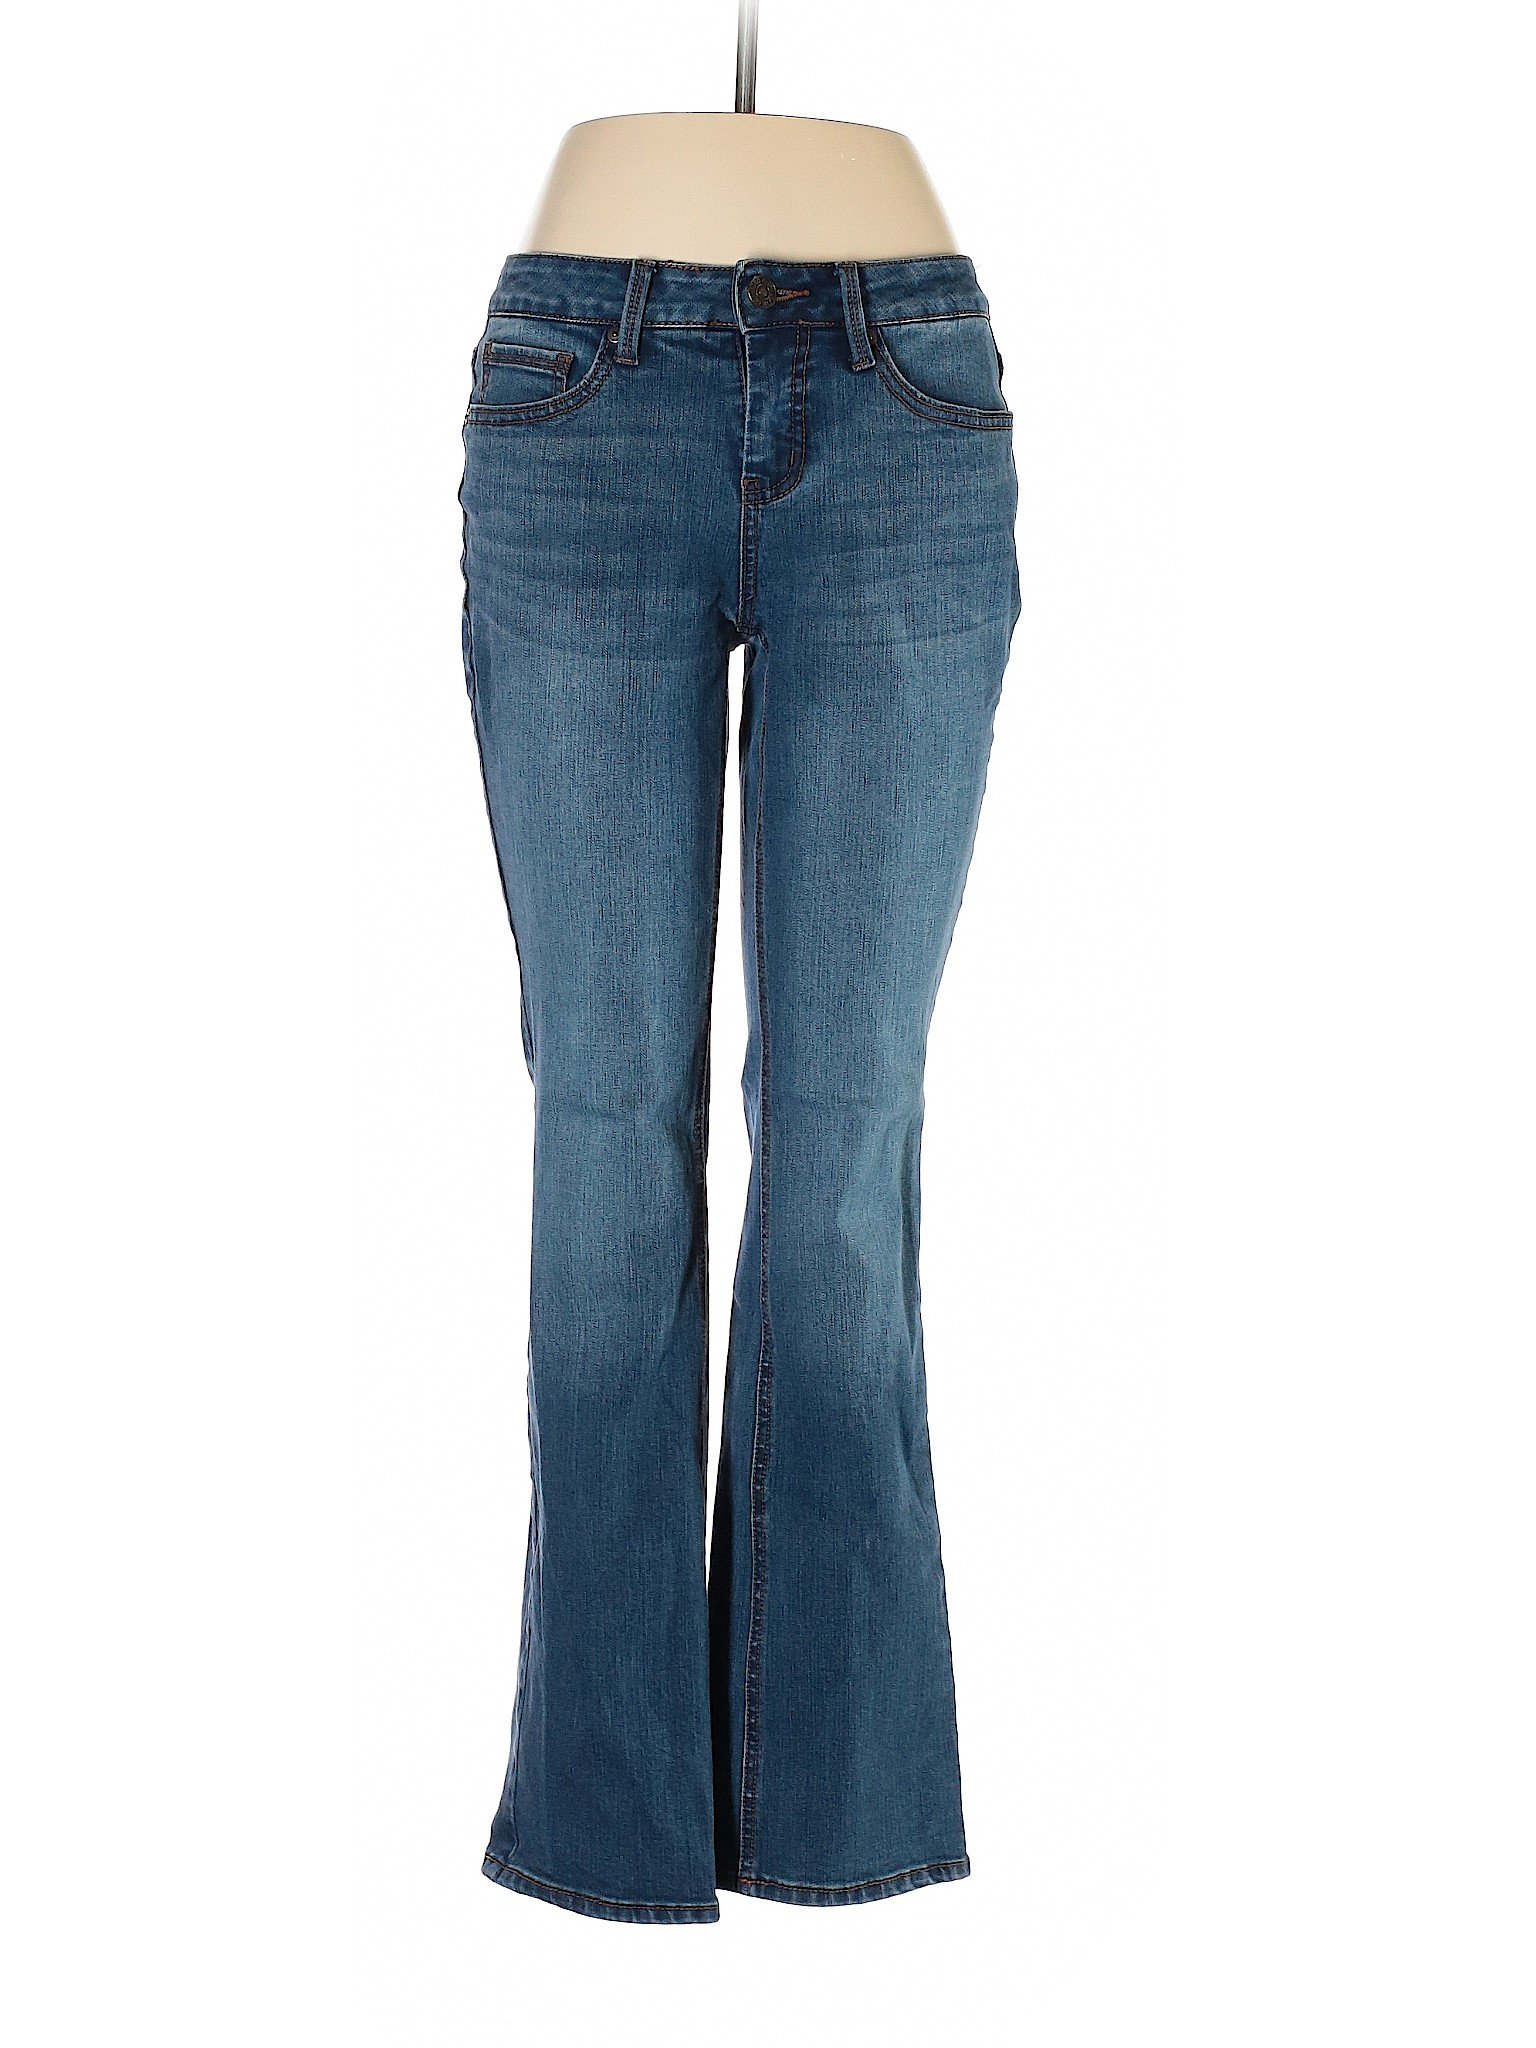 Faded Glory Women Blue Jeans 8 | eBay